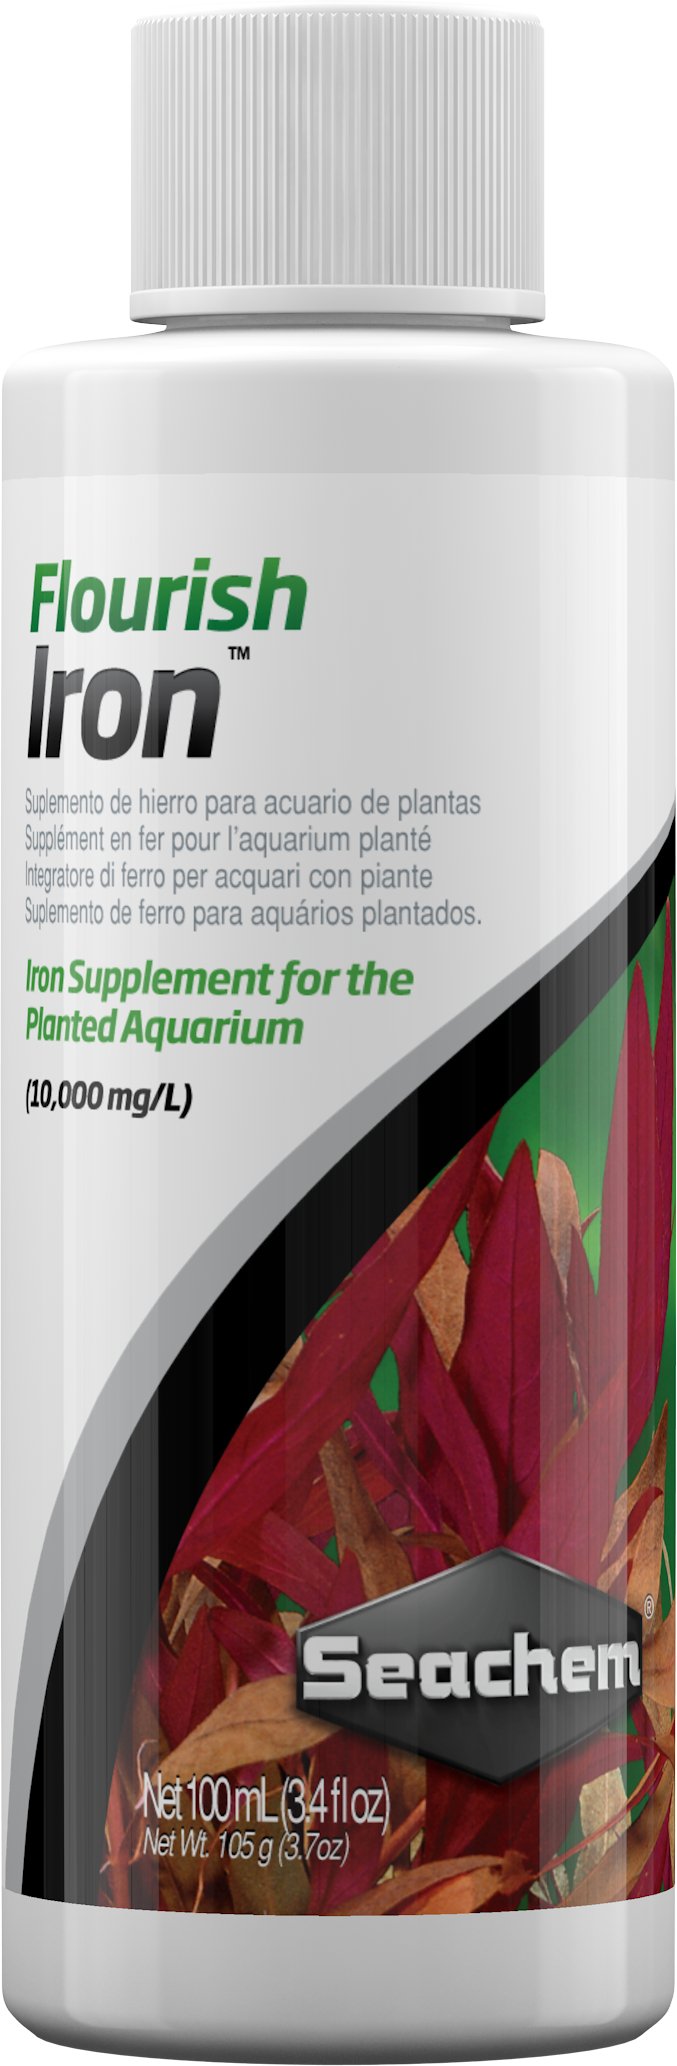 Flourish Iron - Discus Roa Fish